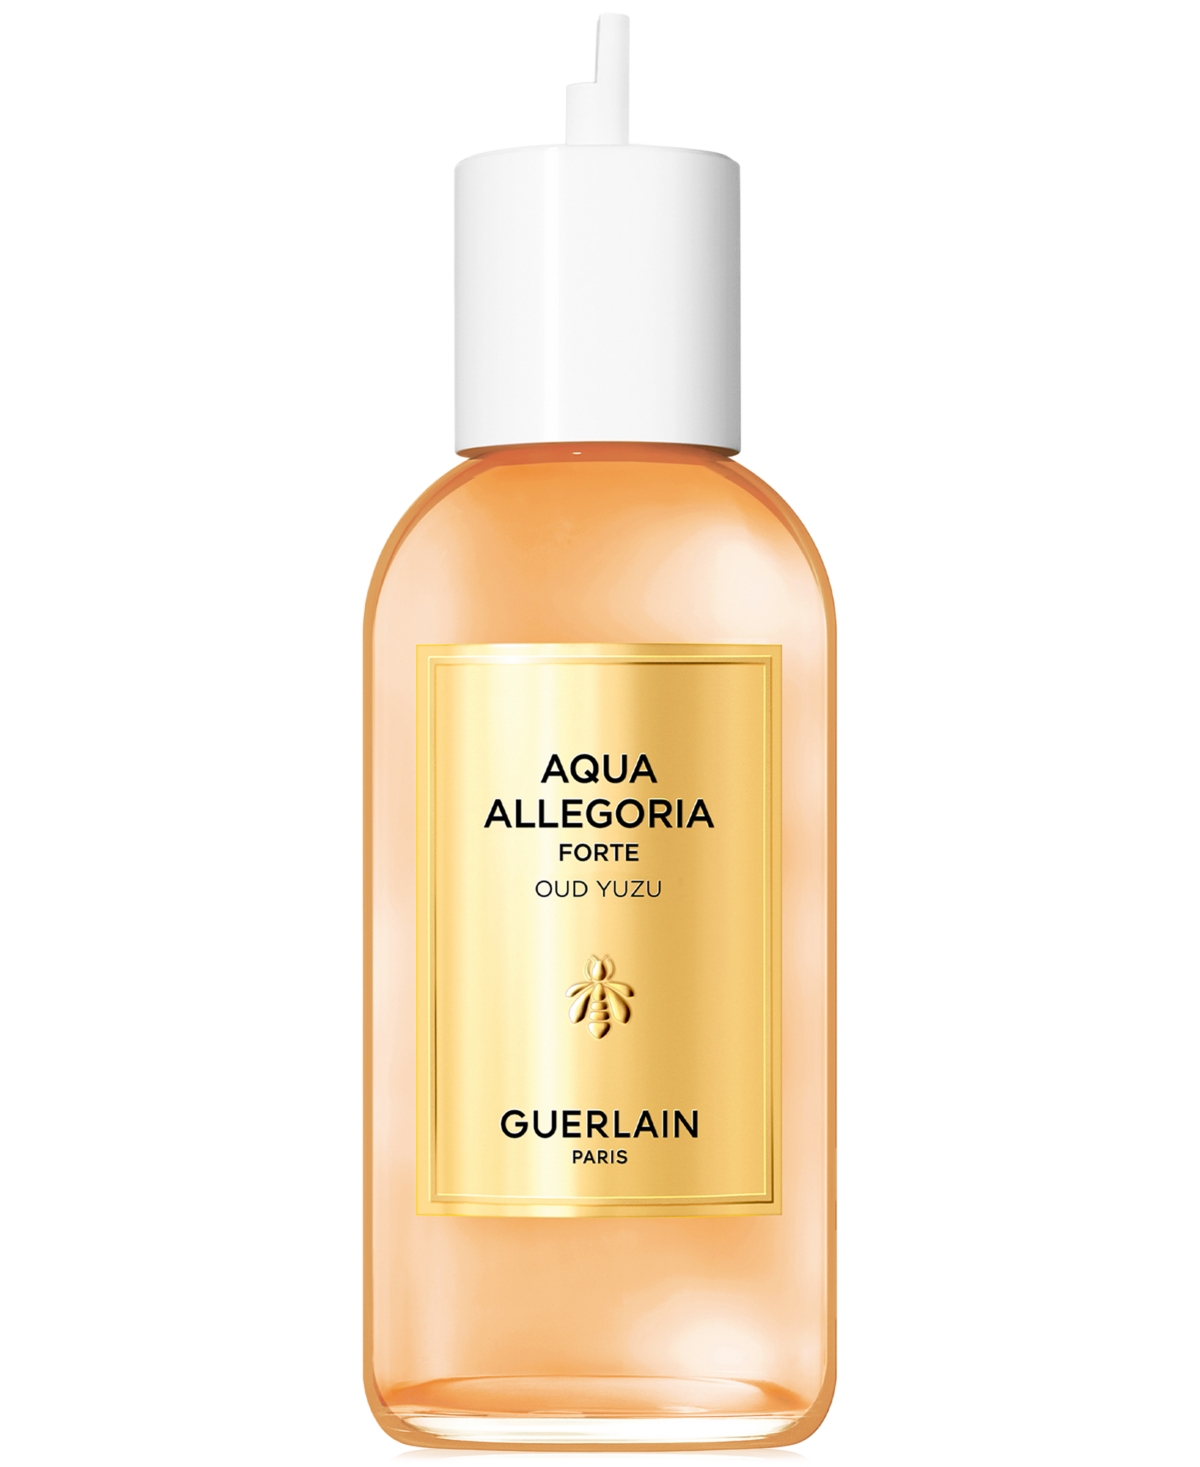 Guerlain Aqua Allegoria Forte Oud Yuzu Eau De Parfum Refill, 6.7 Oz.